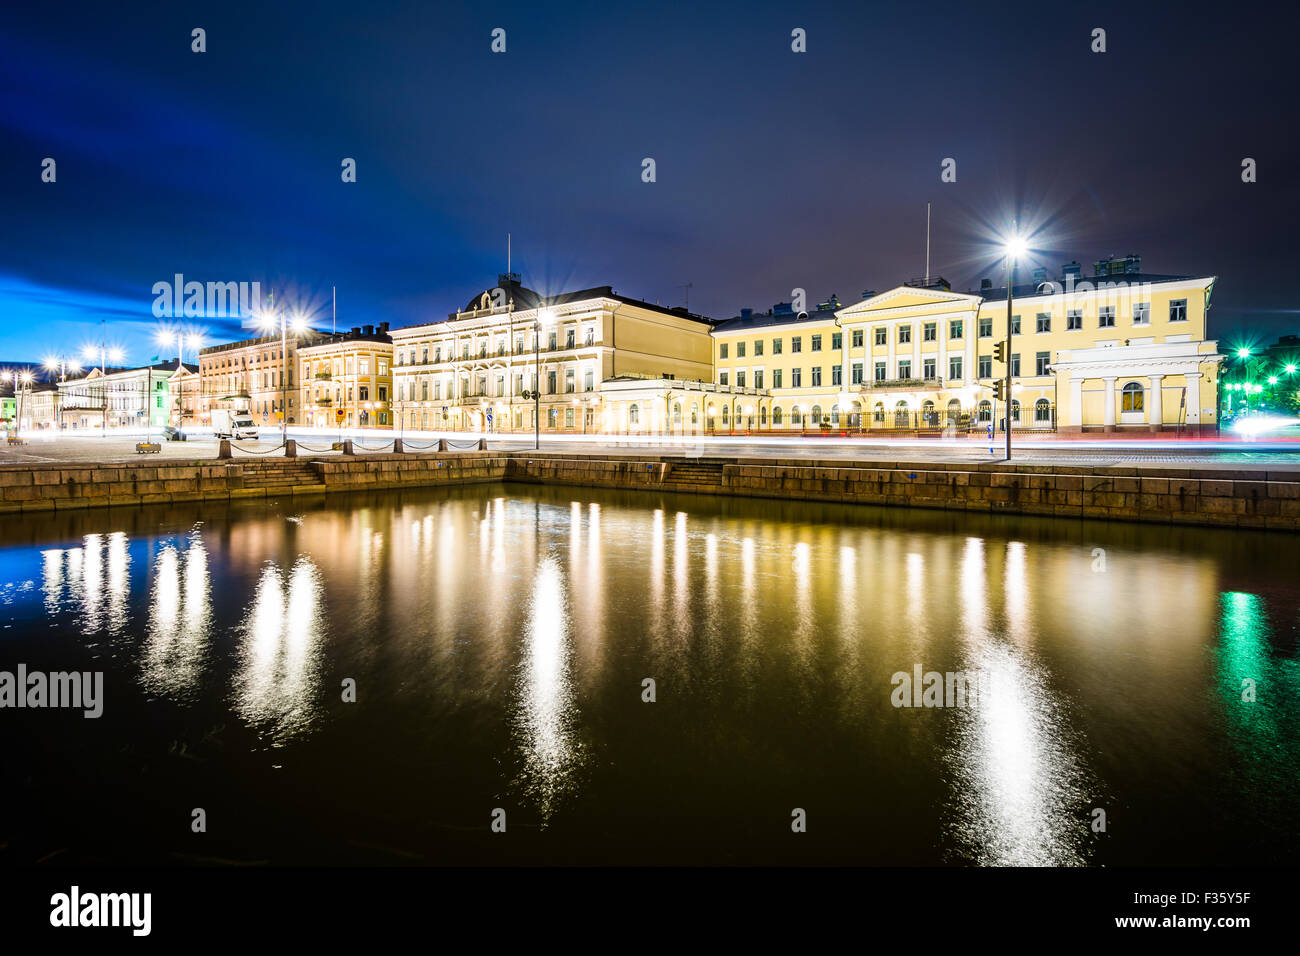 Les bâtiments à la place du marché de nuit, à Helsinki, en Finlande. Banque D'Images